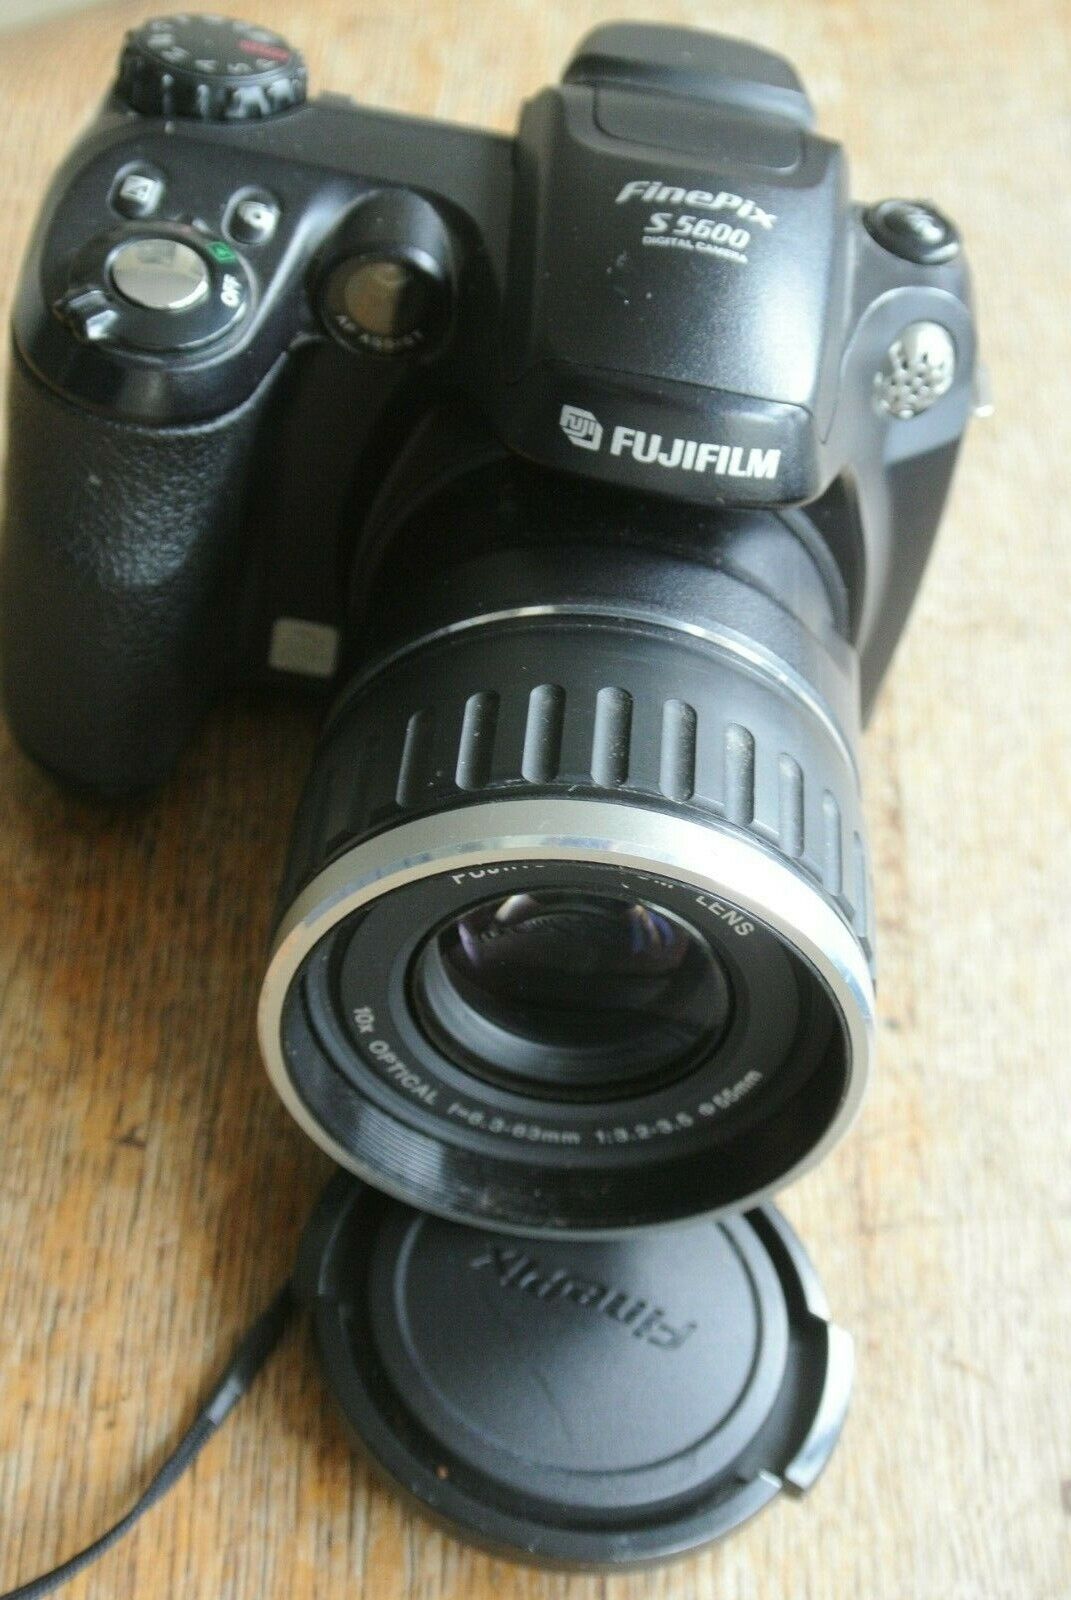 Fujifilm Finepix S5600 5.1mPixel Digital Camera | eBay